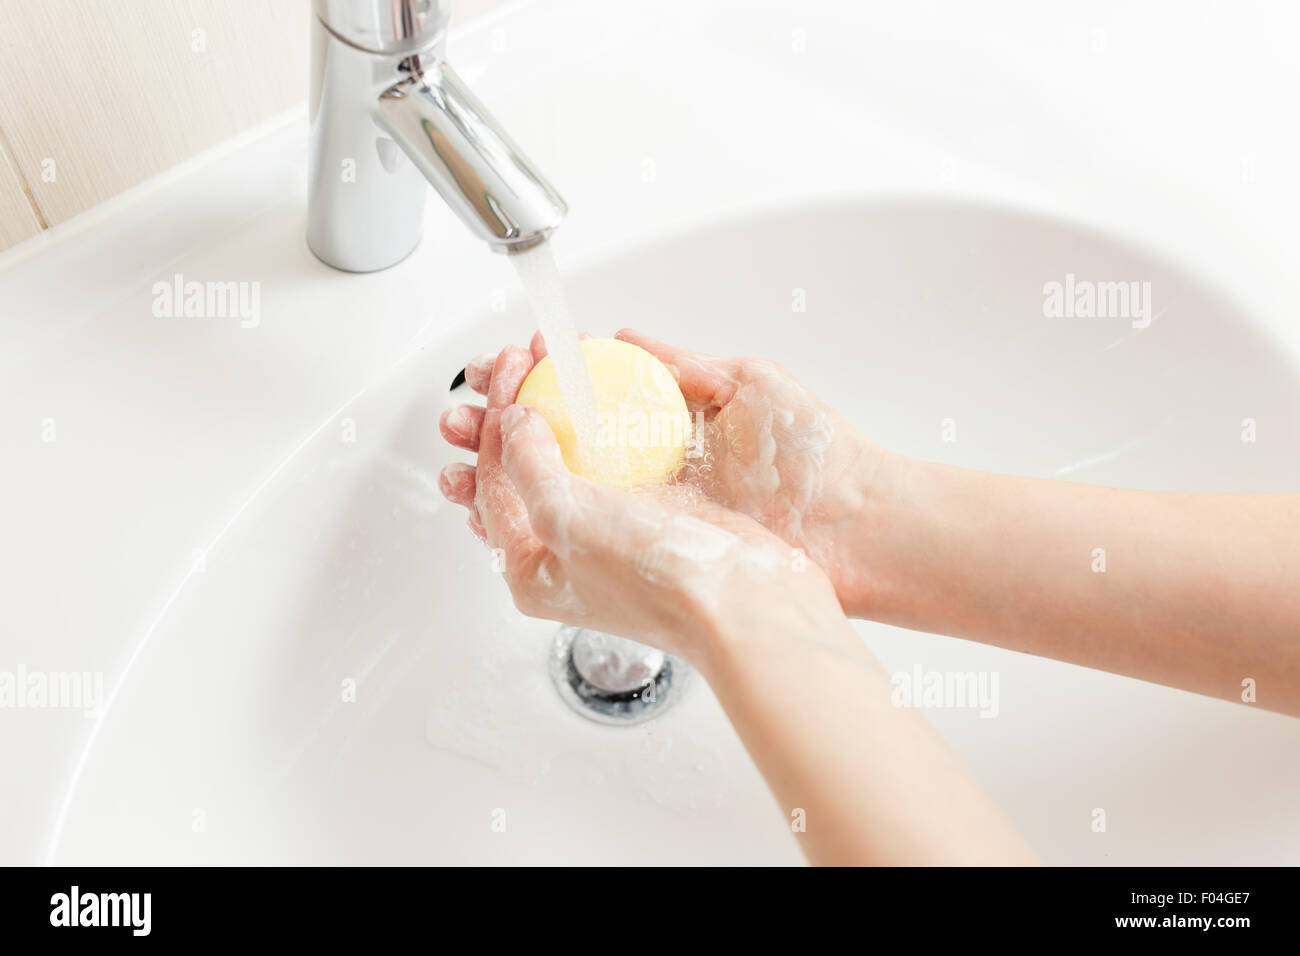 Waschen der Hände im Badezimmer, Nahaufnahme Foto Stockfoto